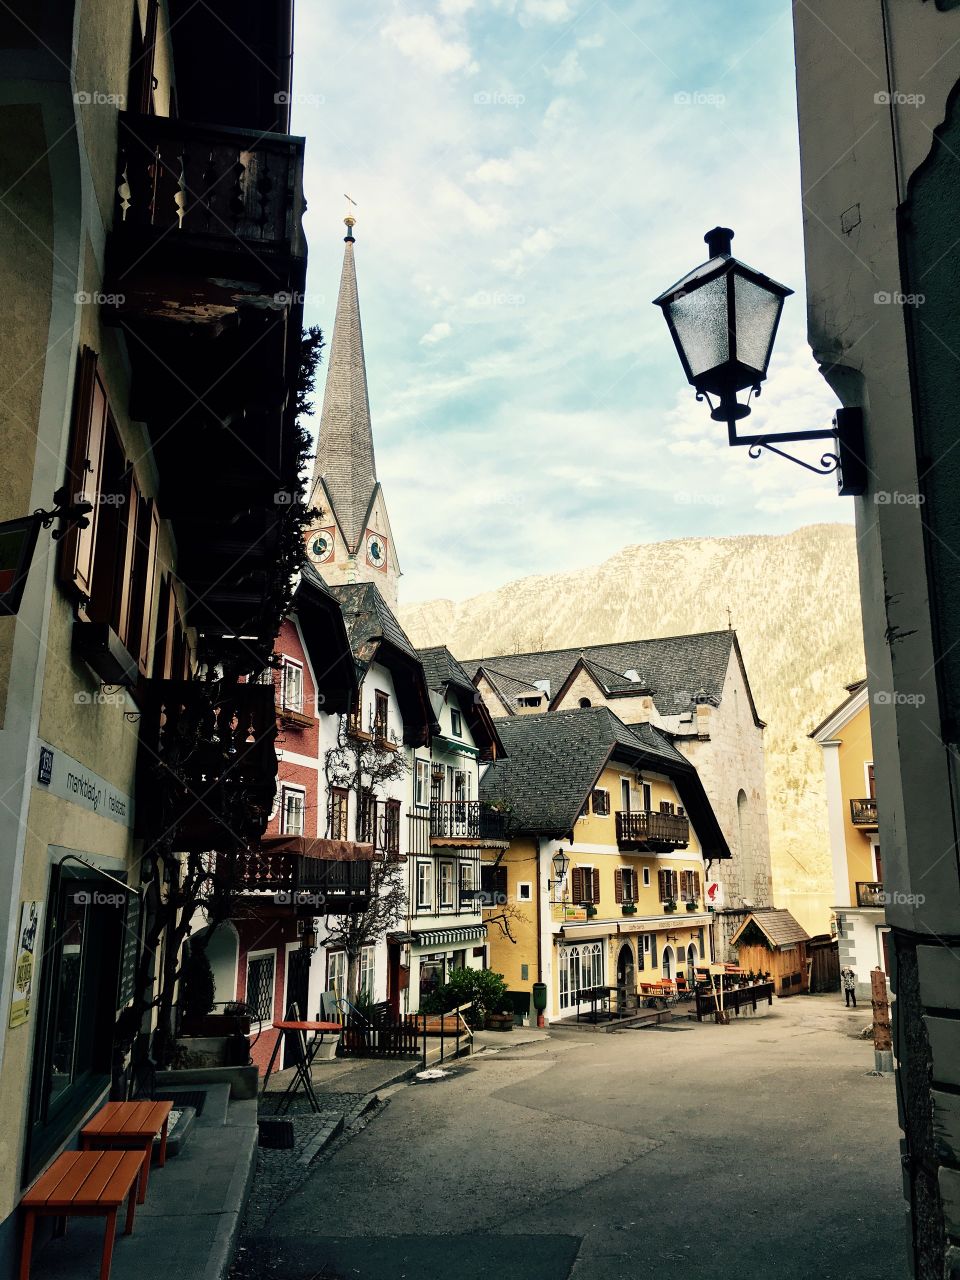 Street of Hallstatt of Austria 